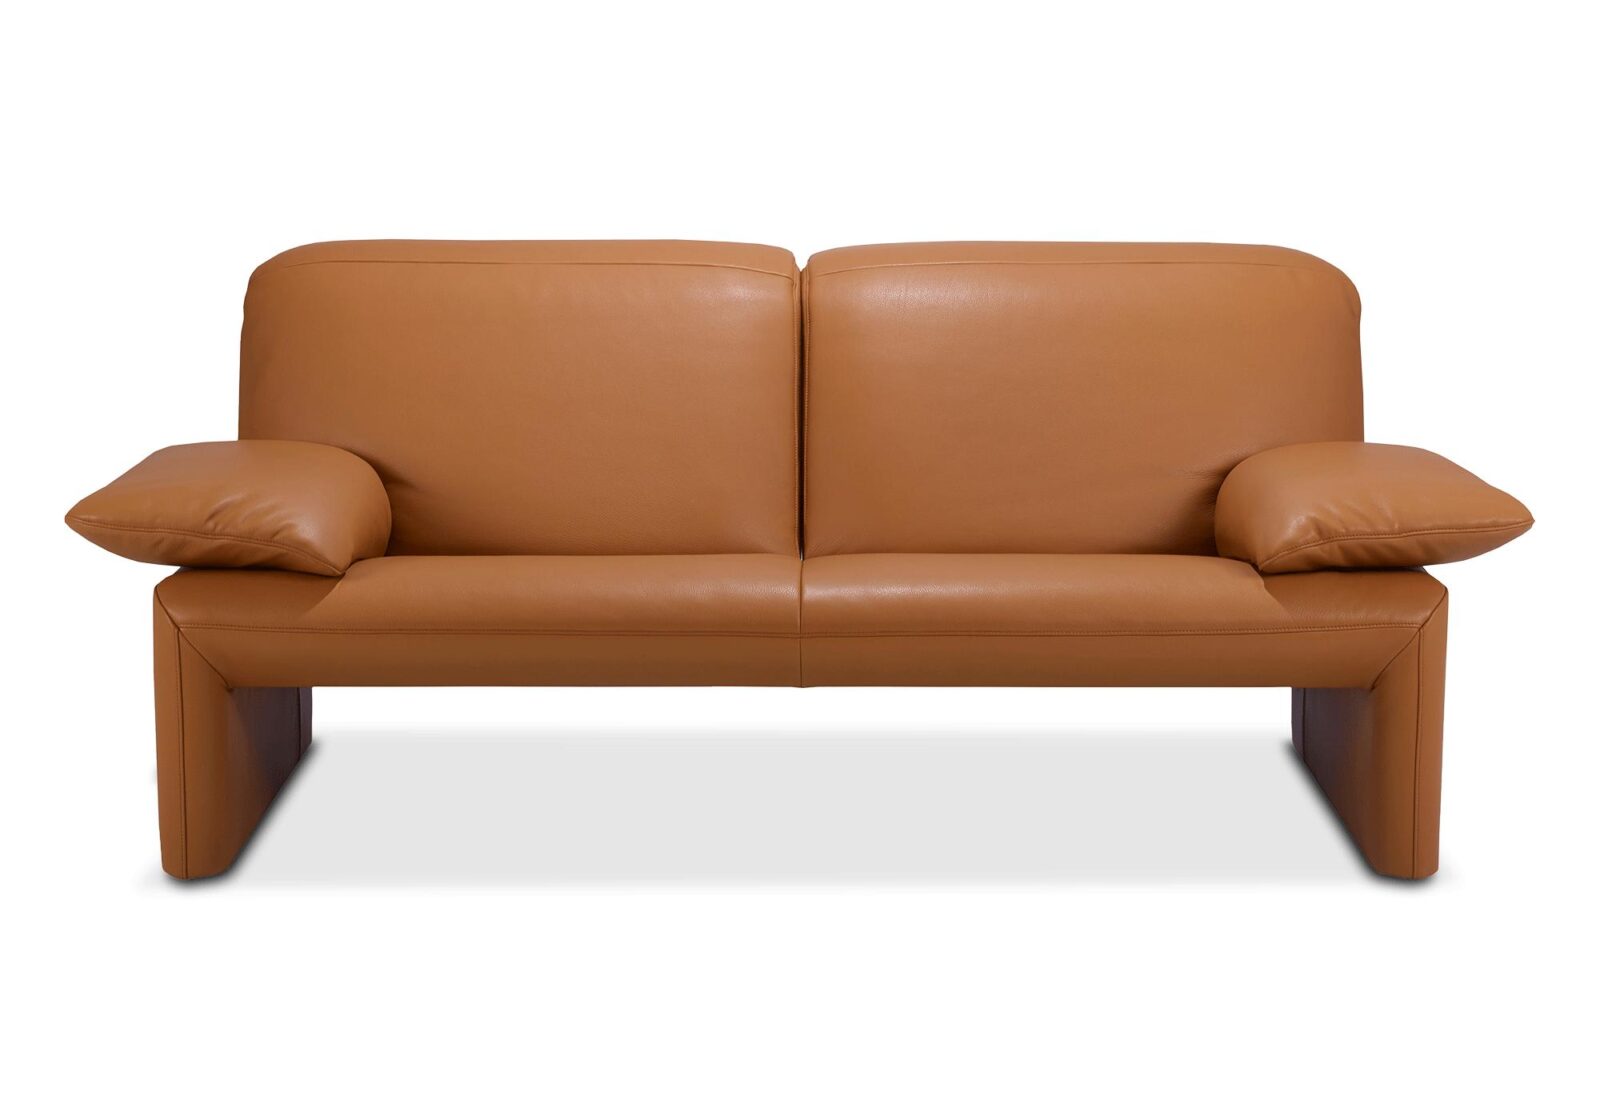 2.5er Sofa Linea Jori  verstellbare Armlehnen. Bezug: Leder. Farbe: Braun. Erhältlich bei Möbel Gallati.